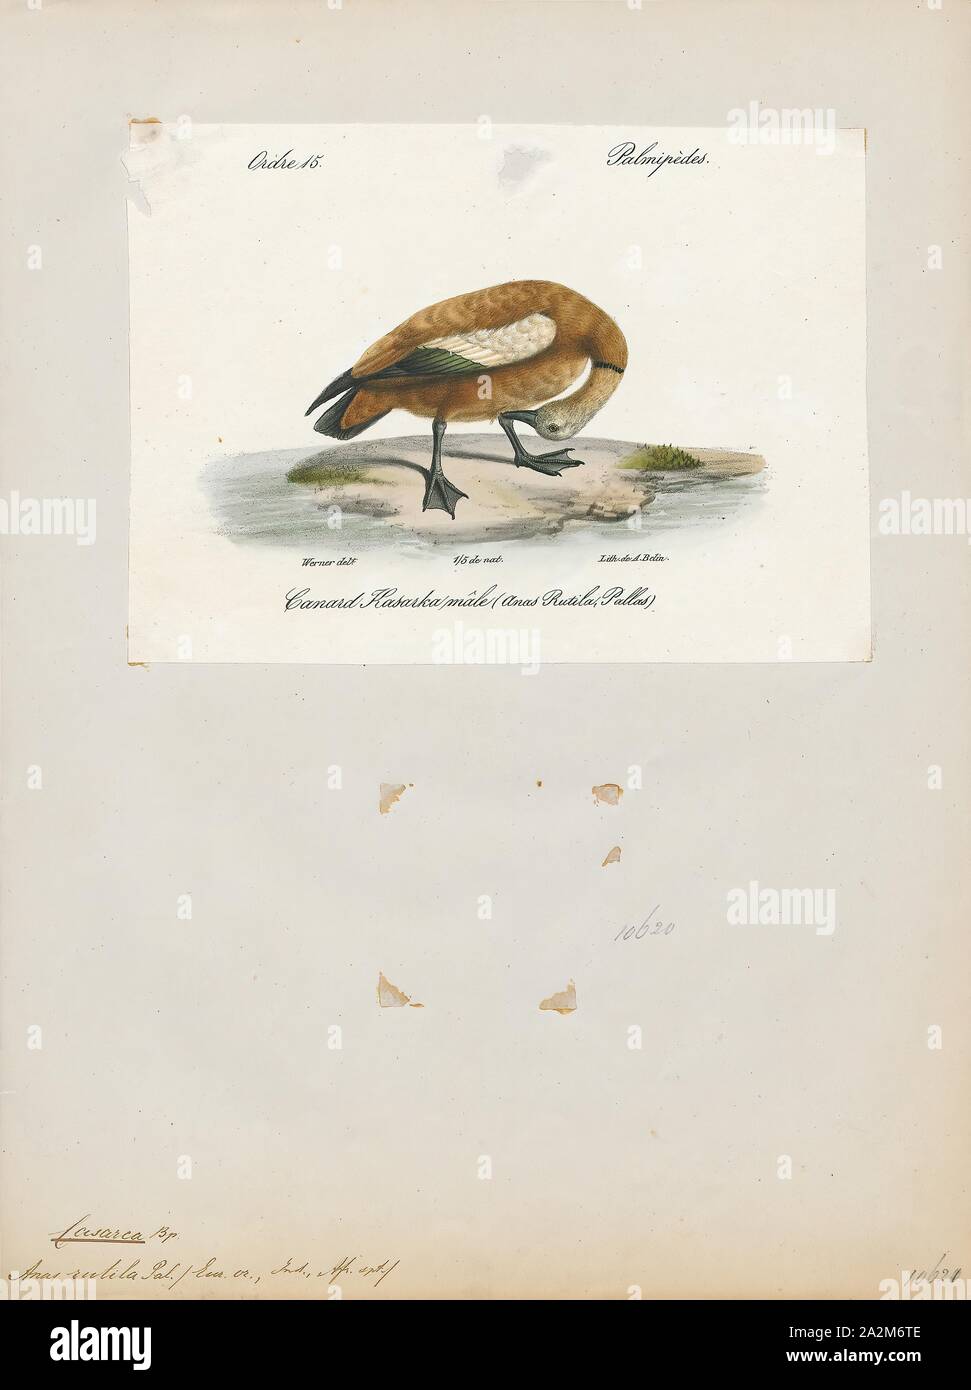 Rutila Casarca, imprimir el ruddy shelduck (Tadorna ferruginea), conocido en la India como los patos Brahminy, es un miembro de la familia Anatidae. Es un distintivo de aves acuáticas, de 58 a 70 cm (23 a 28 pulgadas) de longitud con una envergadura de 110 a 135 cm (43 a 53). Tiene plumaje corporal naranja-marrón pálido con una cabeza, mientras que la cola y las plumas de vuelo en las alas son de color negro, que contrastan con el blanco de ala cobertoras. Es un ave migratoria, invernando en el subcontinente indio y la cría en el sureste de Europa y Asia central, aunque hay pequeñas poblaciones residentes en el norte de África. Tiene un fuerte Foto de stock